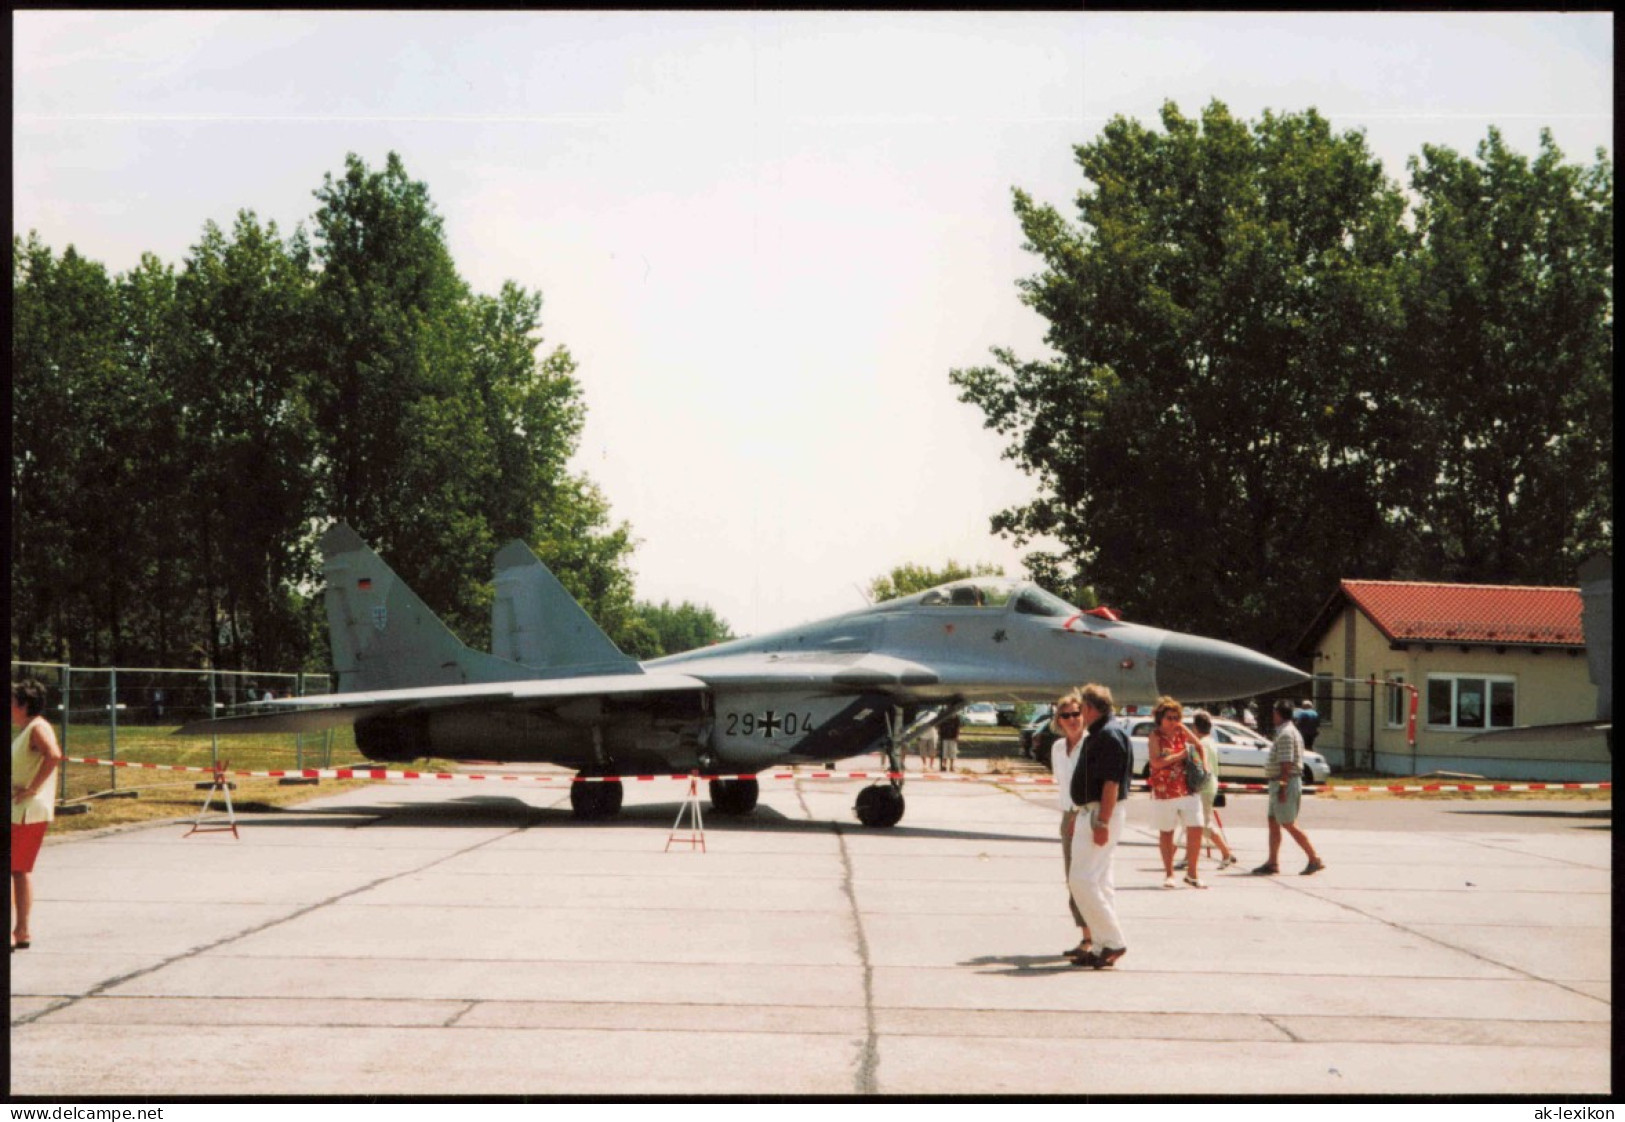 Kampfjet Vom Typ MiG-29 Bundeswehr Flugzeug 1980 Privatfoto - Equipment